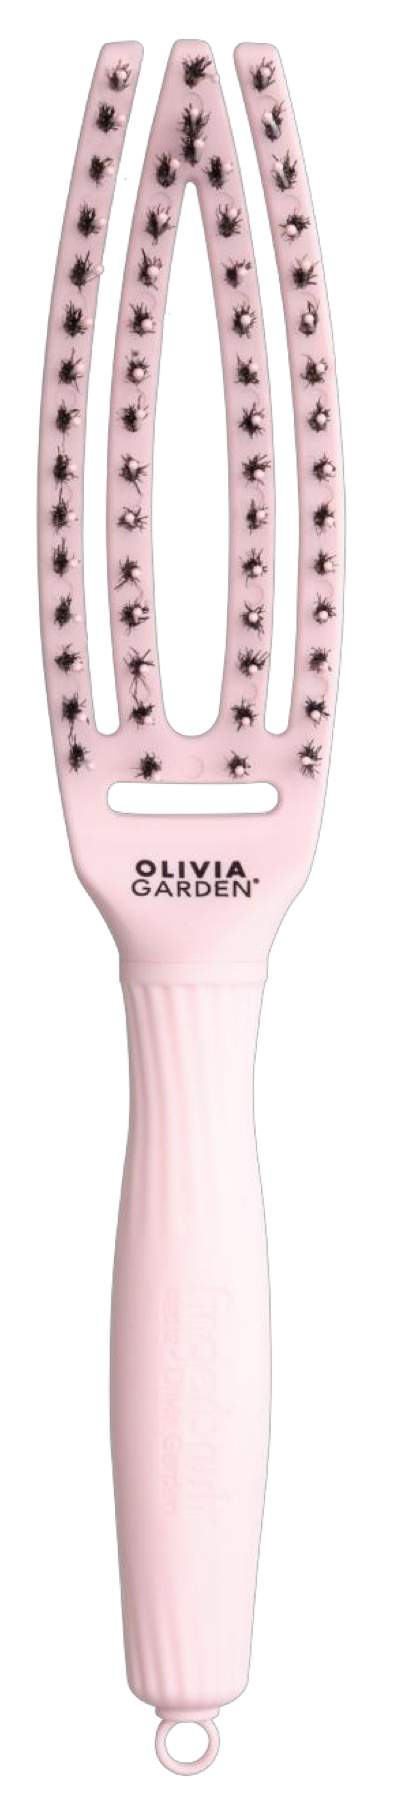 Olivia Garden Finger Brush Pastel Pink S